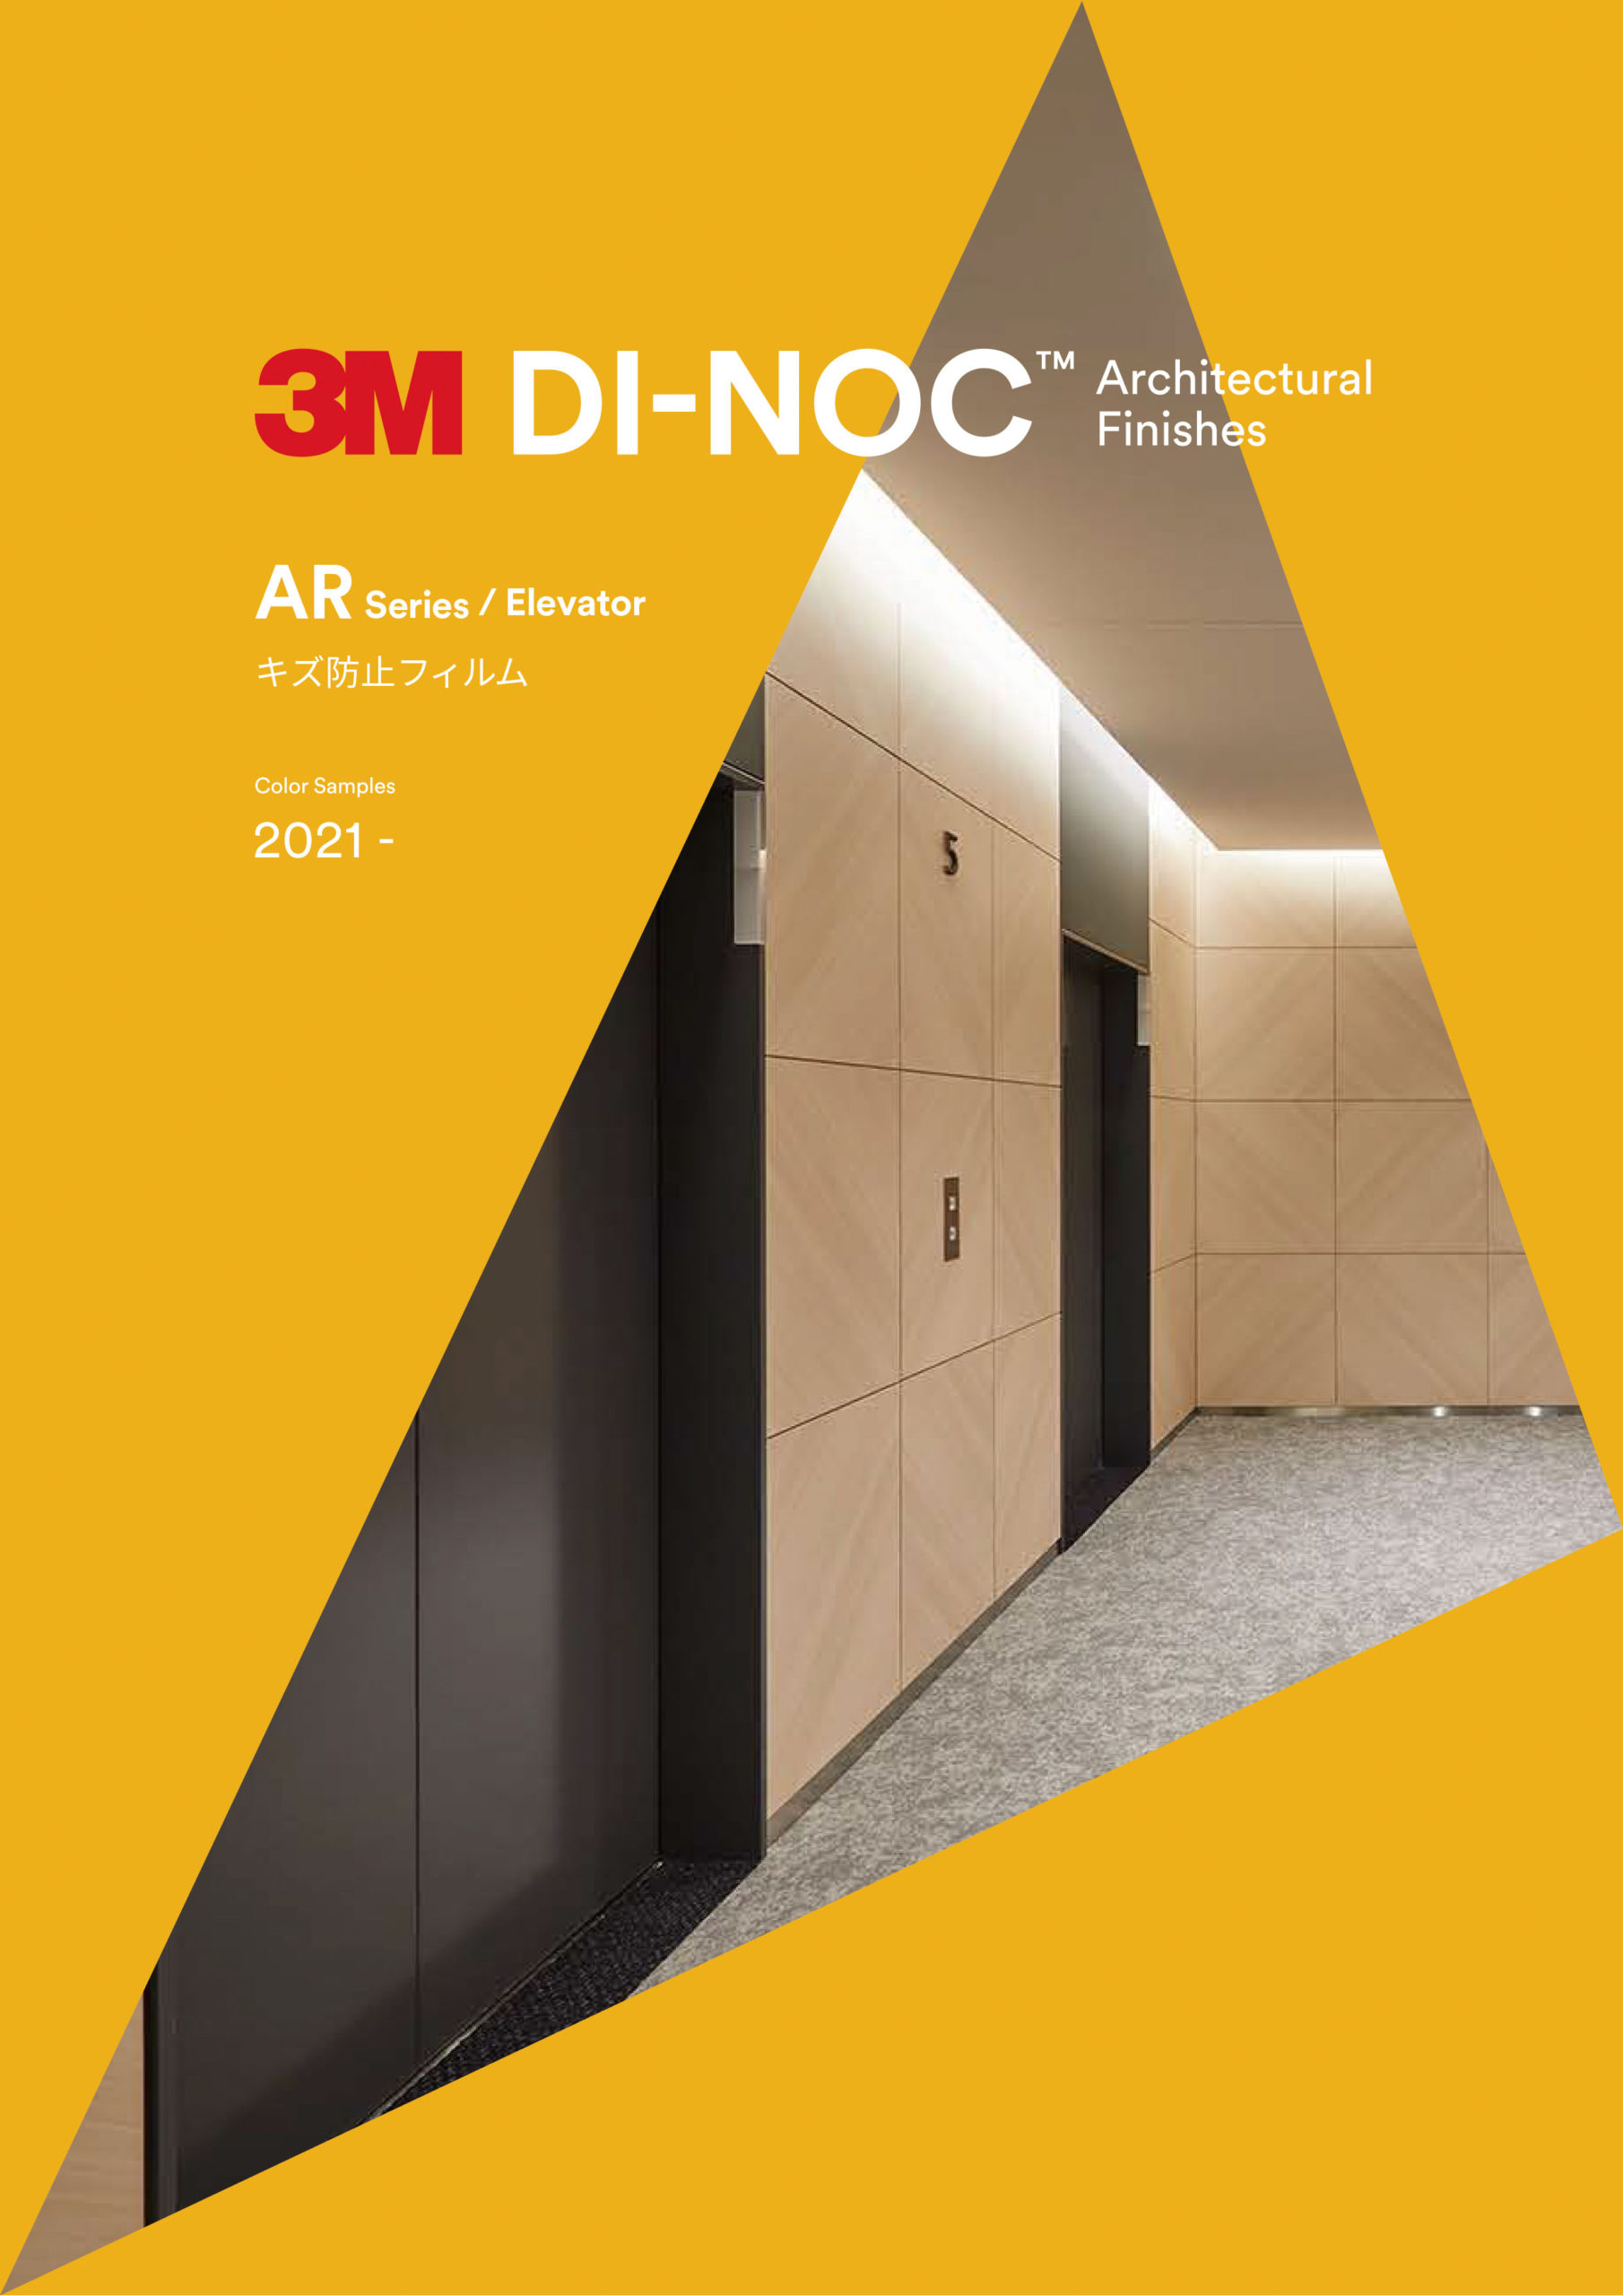 3M™ ダイノック™ ARシリーズ（キズ防止フィルム/エレベーター用）のアイキャッチ